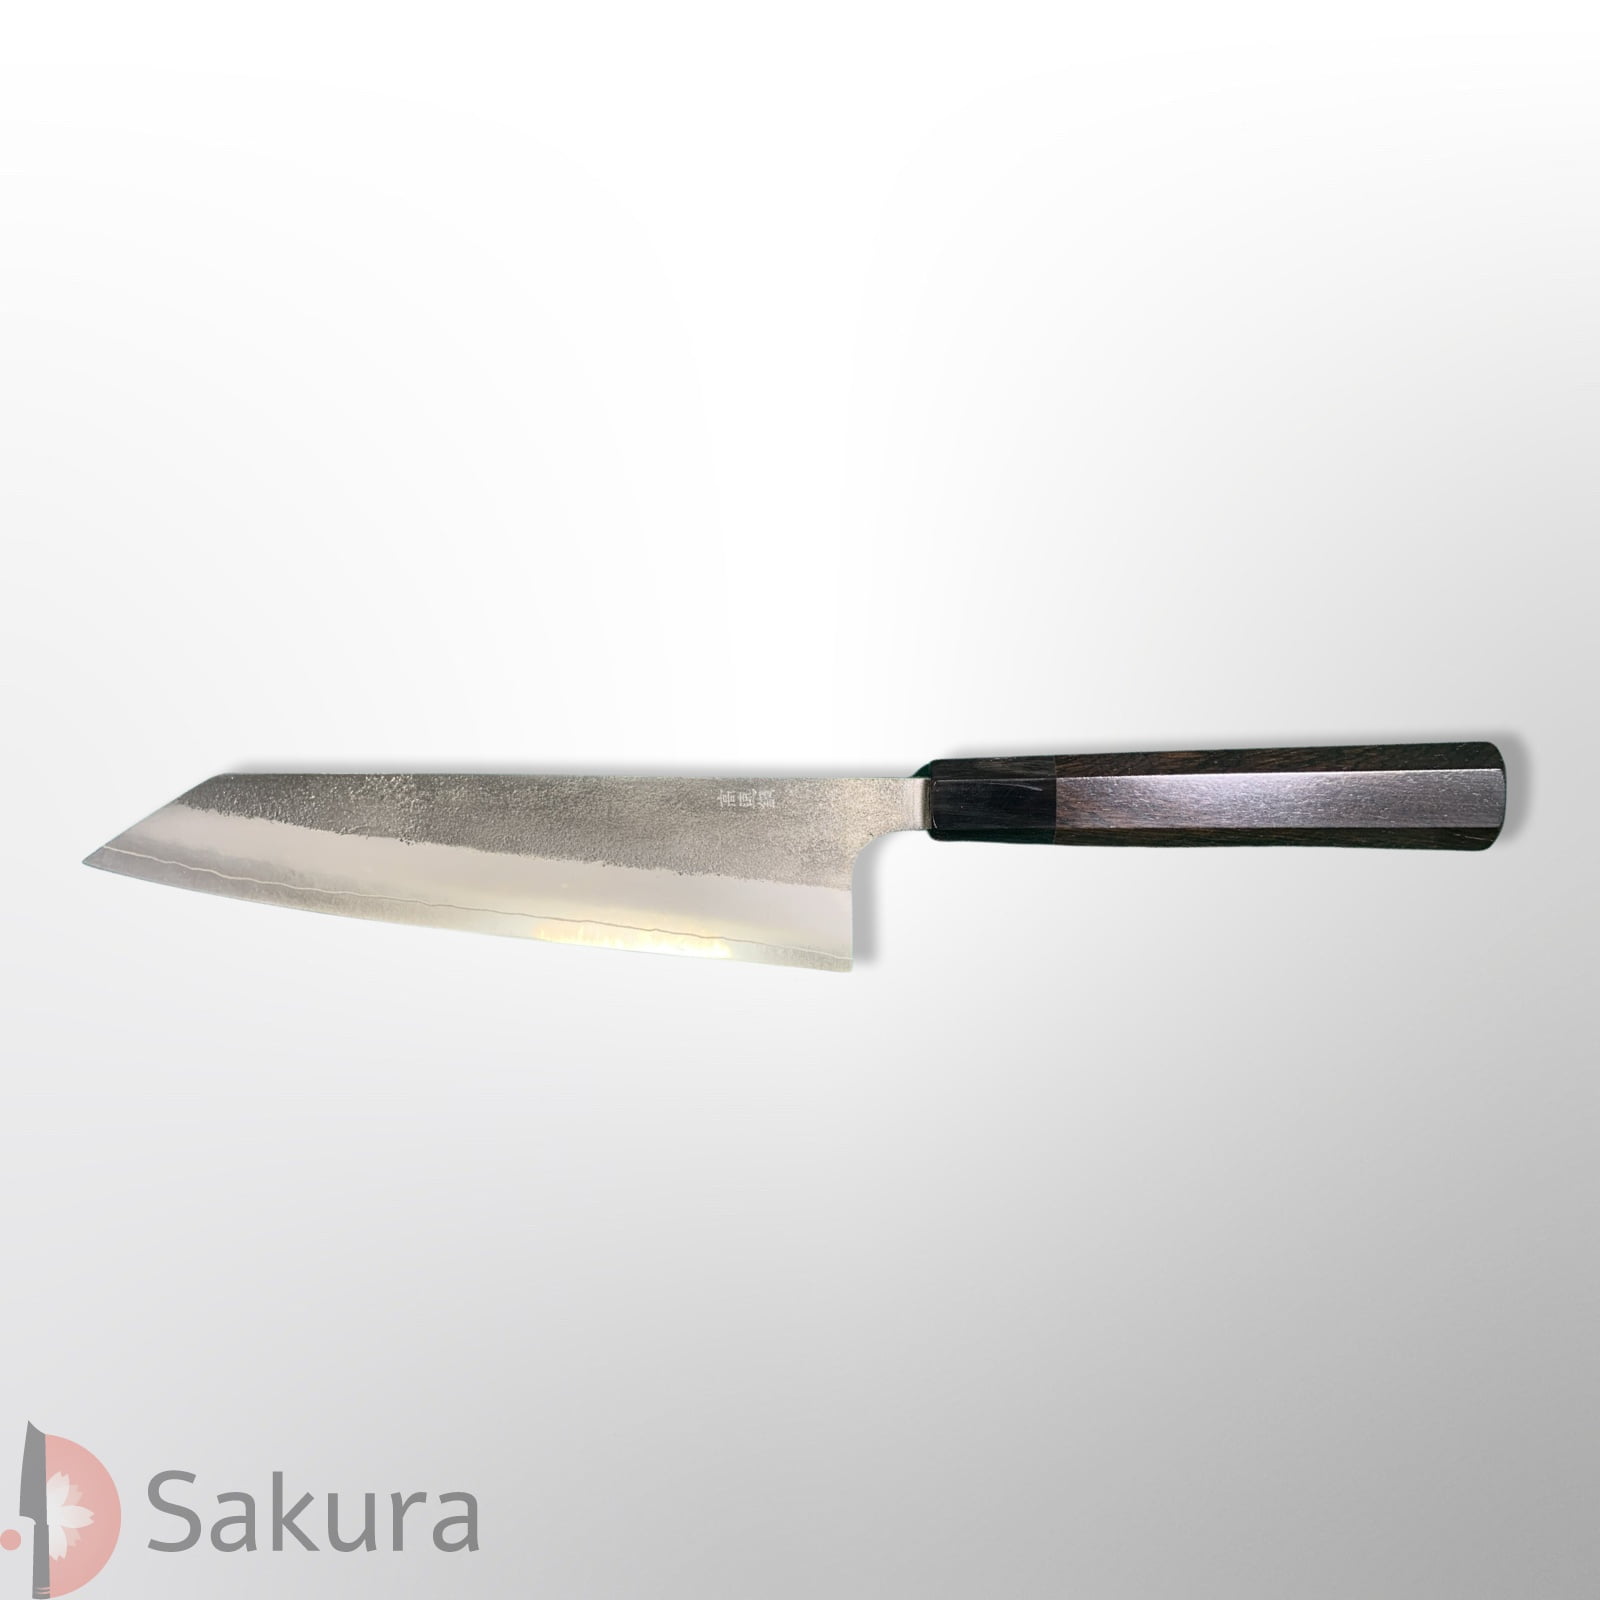 סכין שף רב-תכליתית קִּירִיצוּקֶה גִּיוּטוֹ 210מ״מ מחושלת בעבודת יד 3 שכבות: פלדת פחמן יפנית מתקדמת מסוג SKD  פלדת אל-חלד גימור אל-חלד קורואוצ׳י מט חיספוס טבעי יושיקאנה יפן – SKYOSHSKDNAKGYUT21024